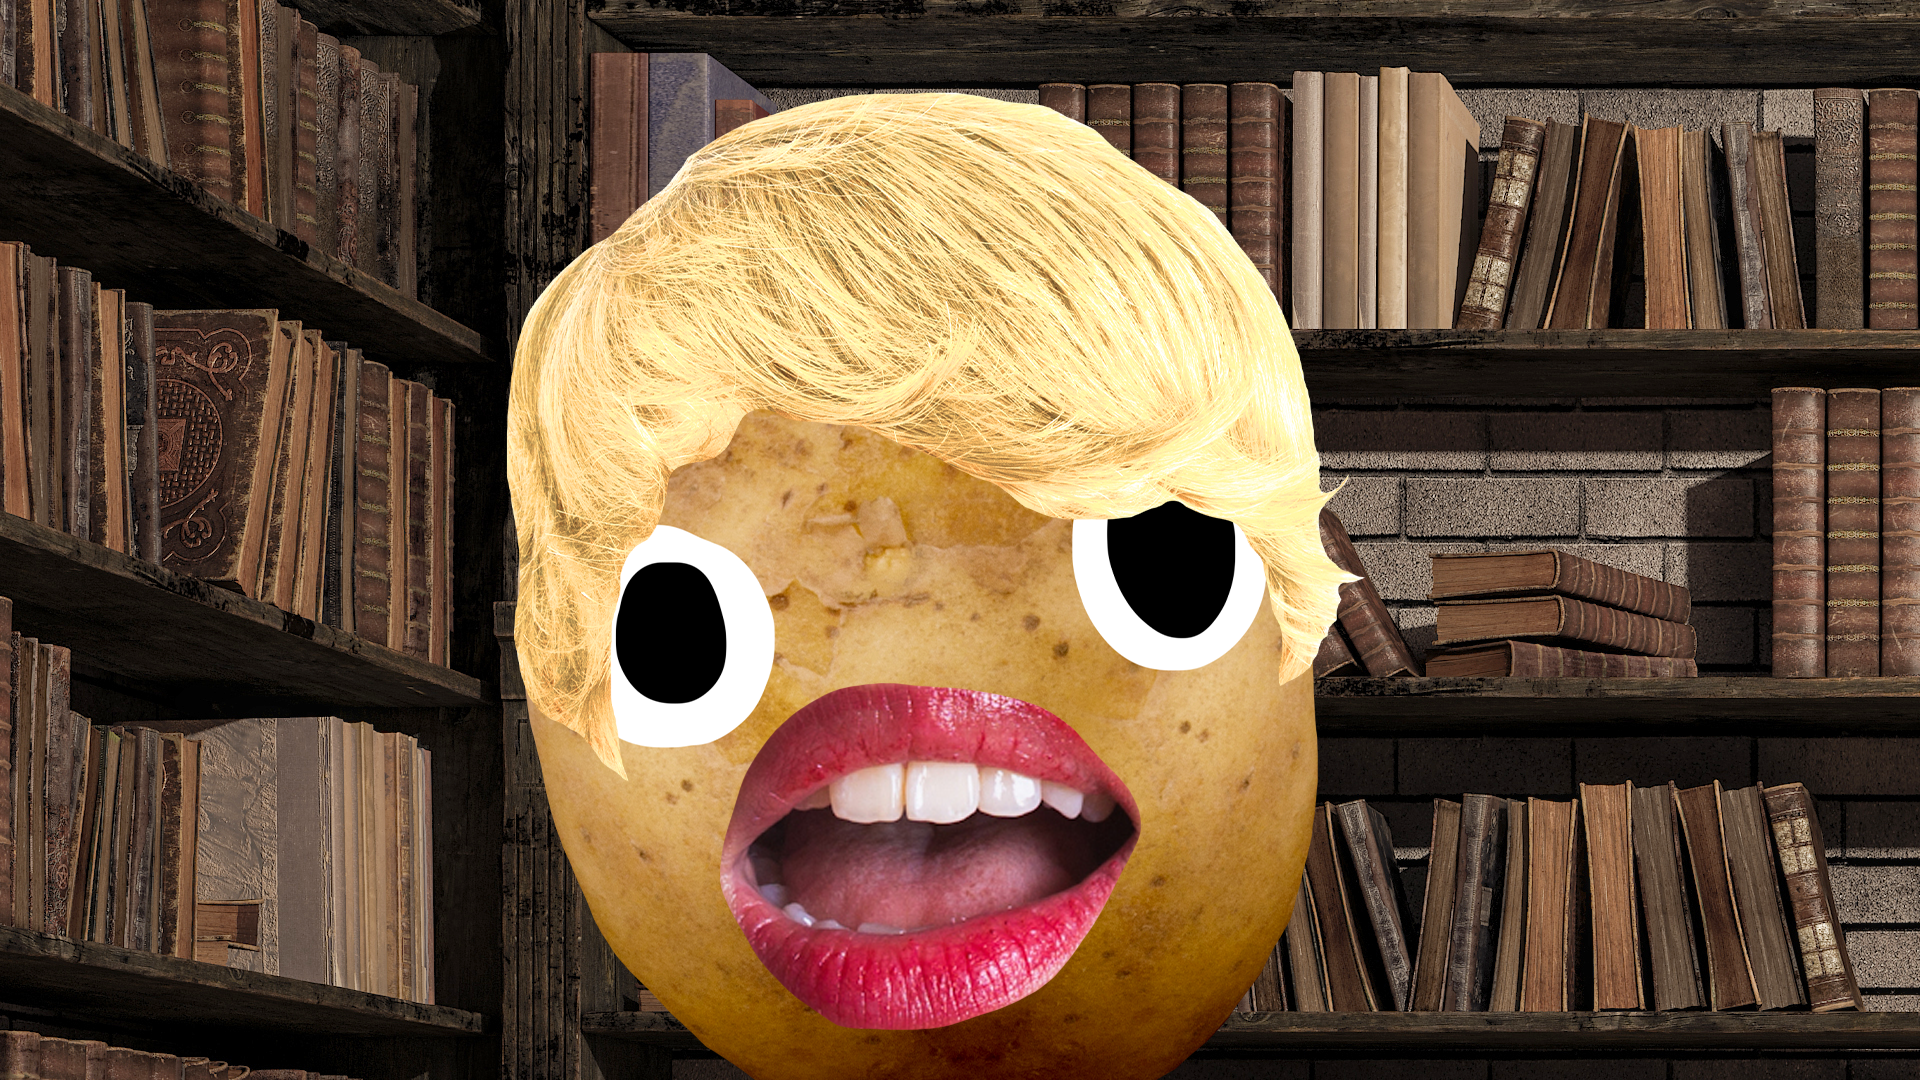 Potato Gilderoy in library